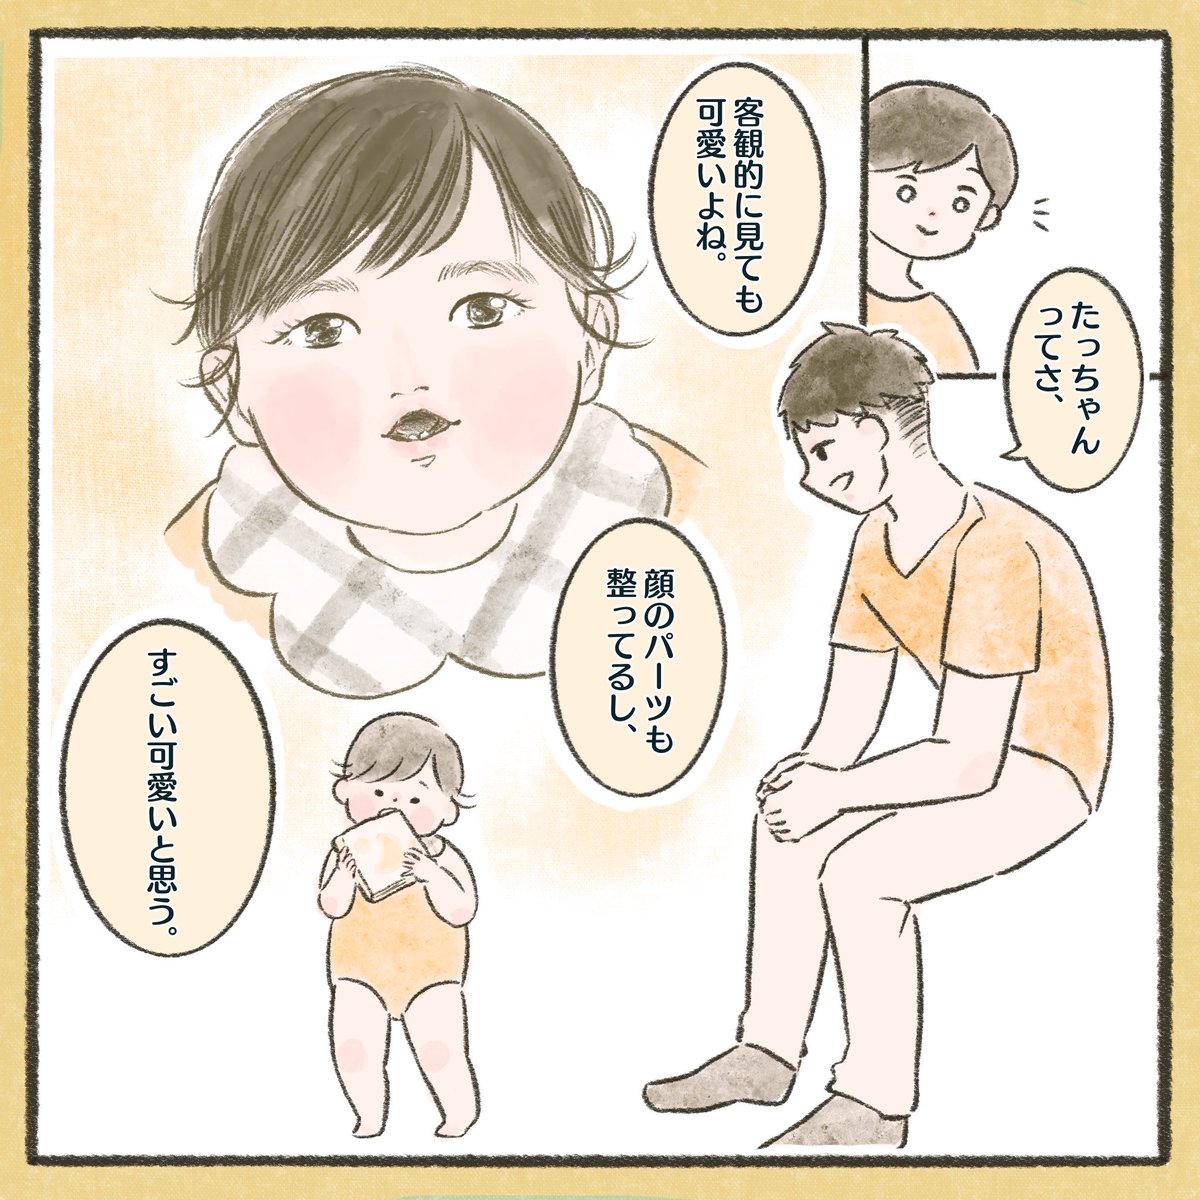 親バカ×2
#育児絵日記 #育児漫画 